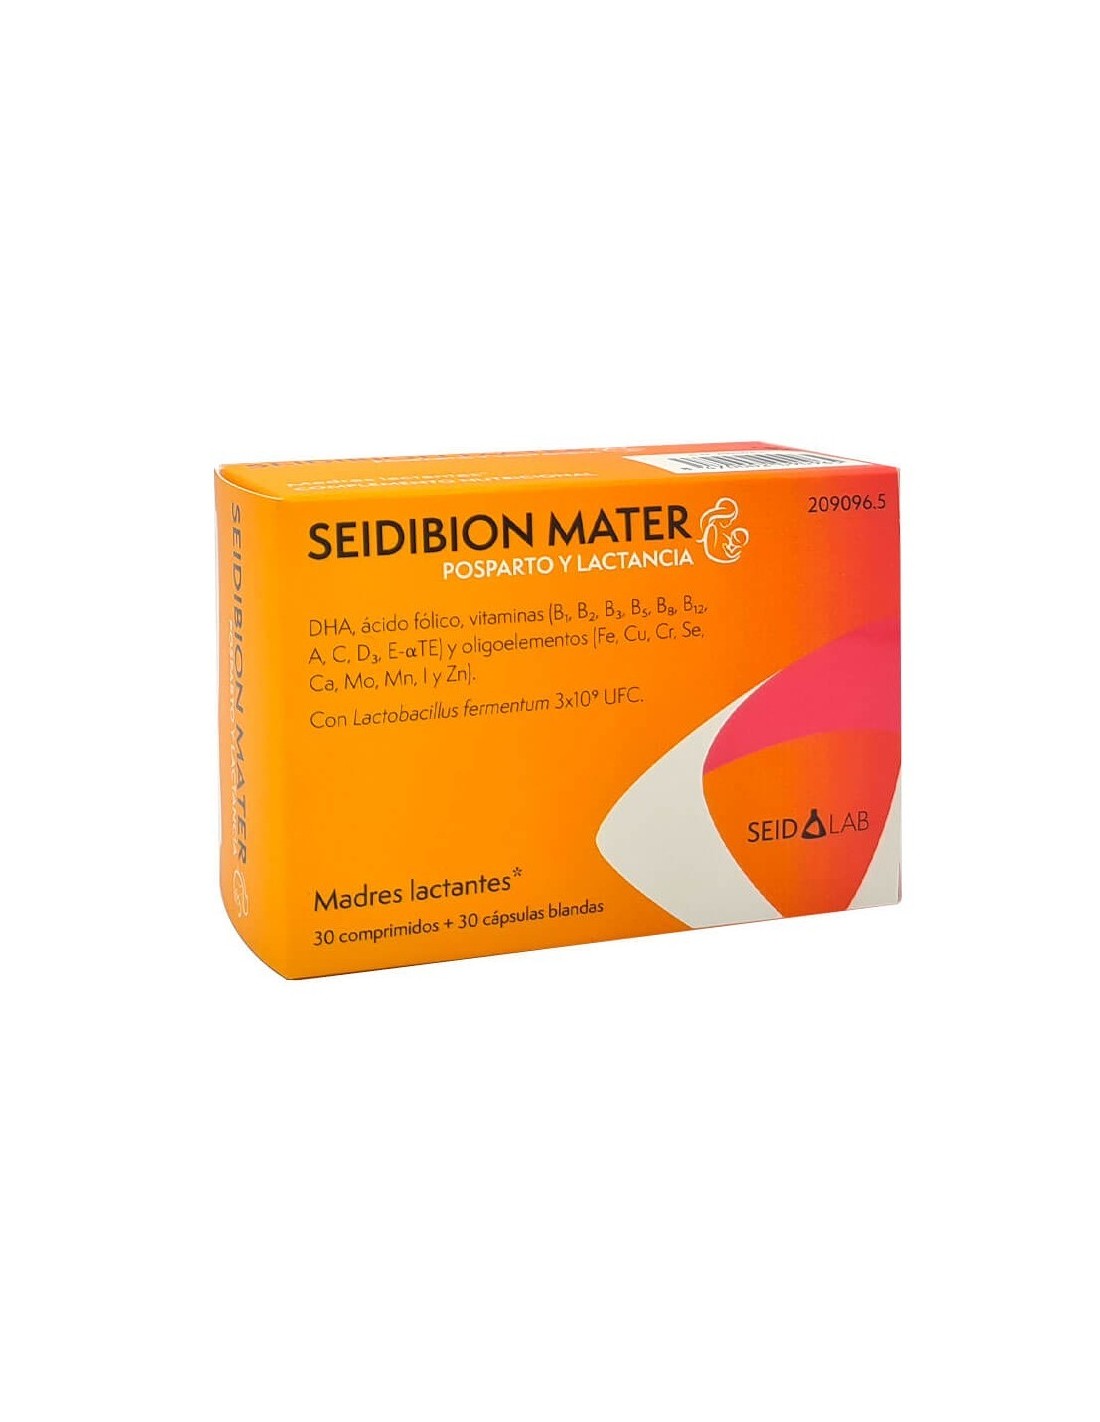 Seidibion Mater Posparto y Lactancia 30 Comprimidos + 30 Cápsulas Blandas